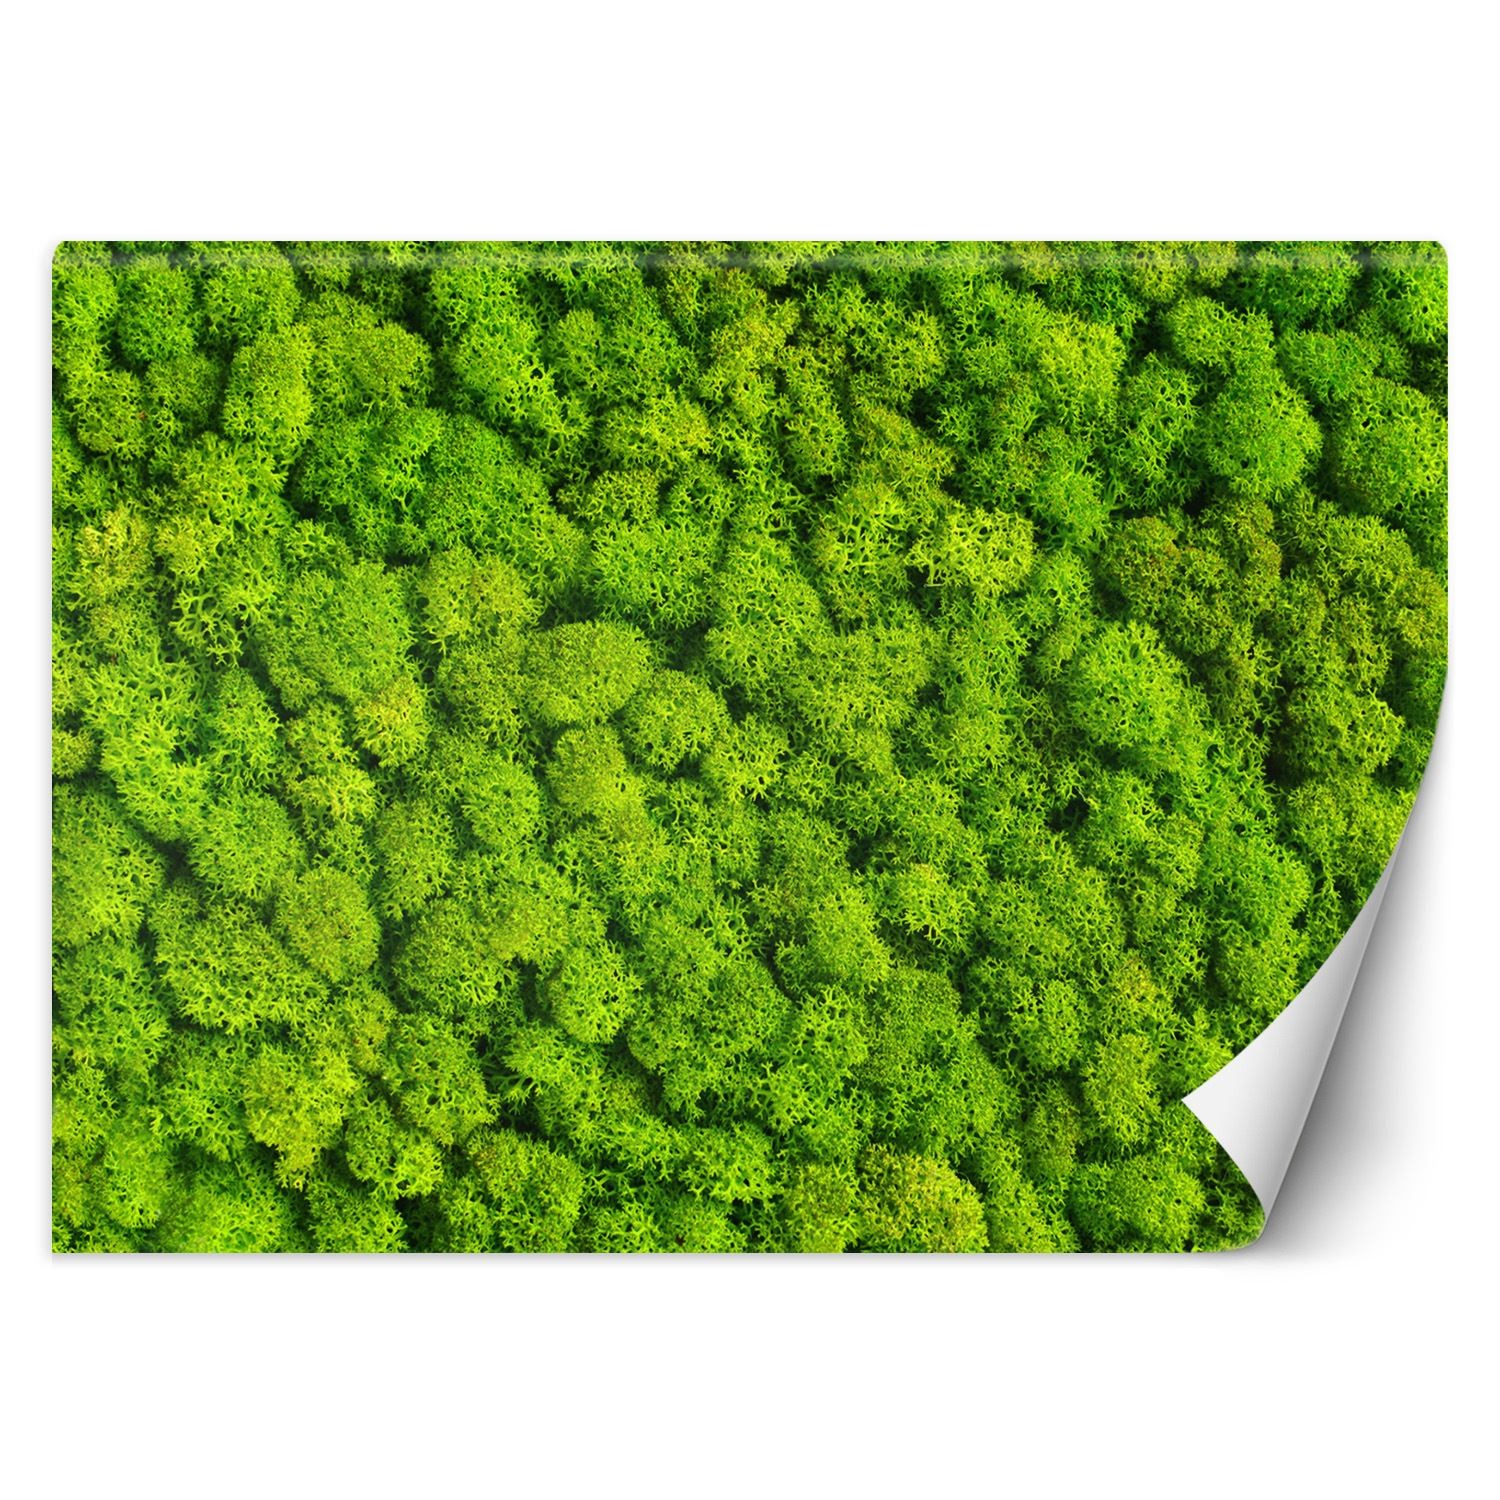 Trend24 – Behang – Weevil Moss – Vliesbehang – Behang Woonkamer – Fotobehang – 450x315x2 cm – Incl. behanglijm